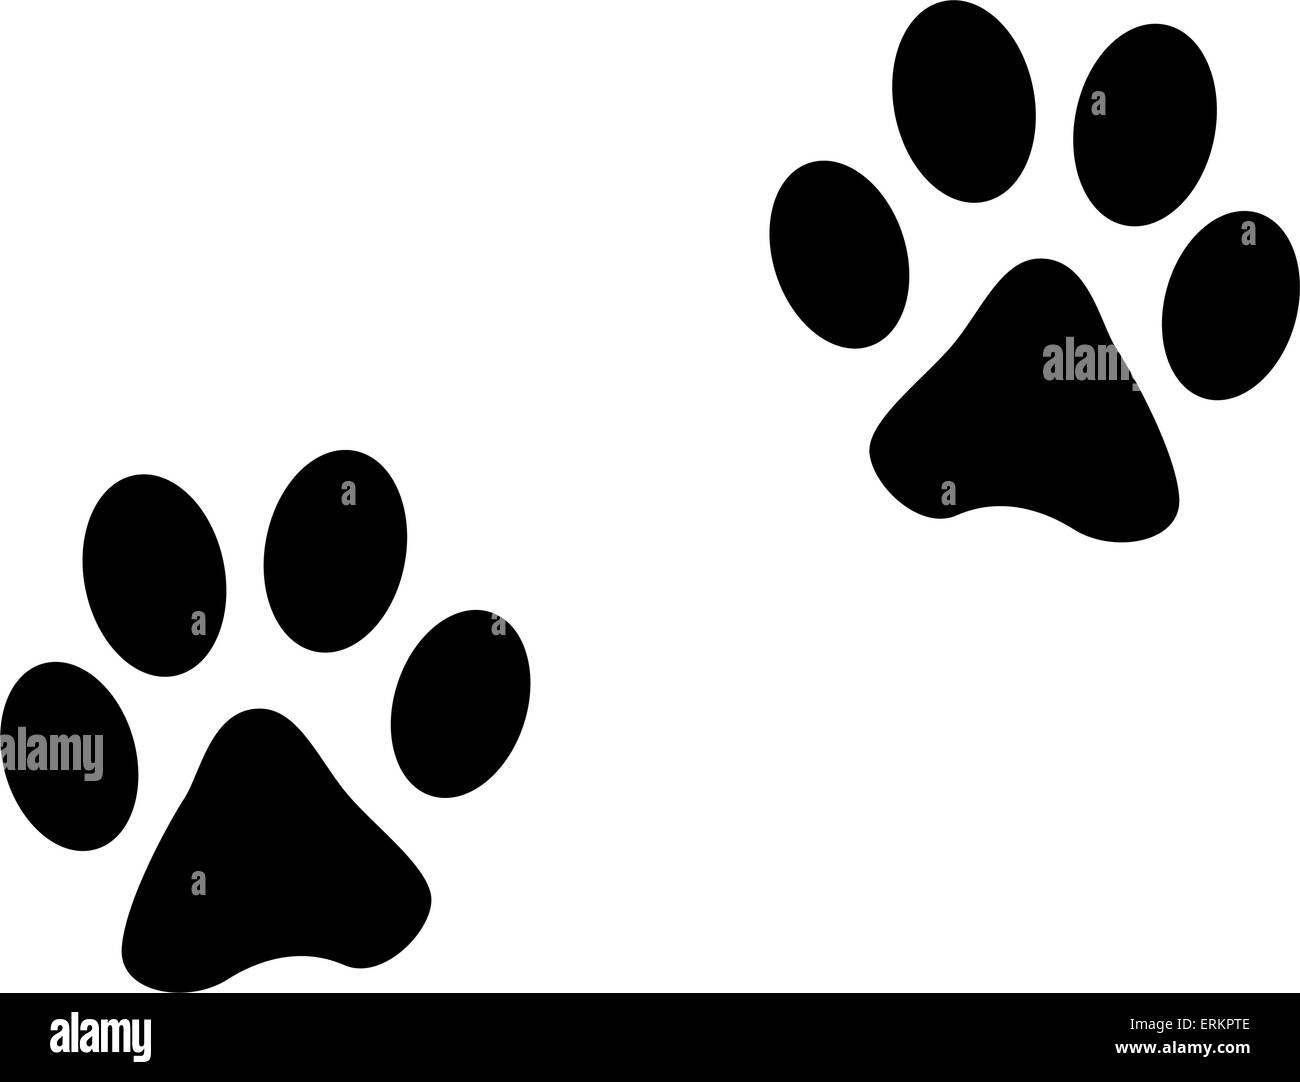 Illustrazione Vettoriale di animali di footprint su sfondo bianco Illustrazione Vettoriale